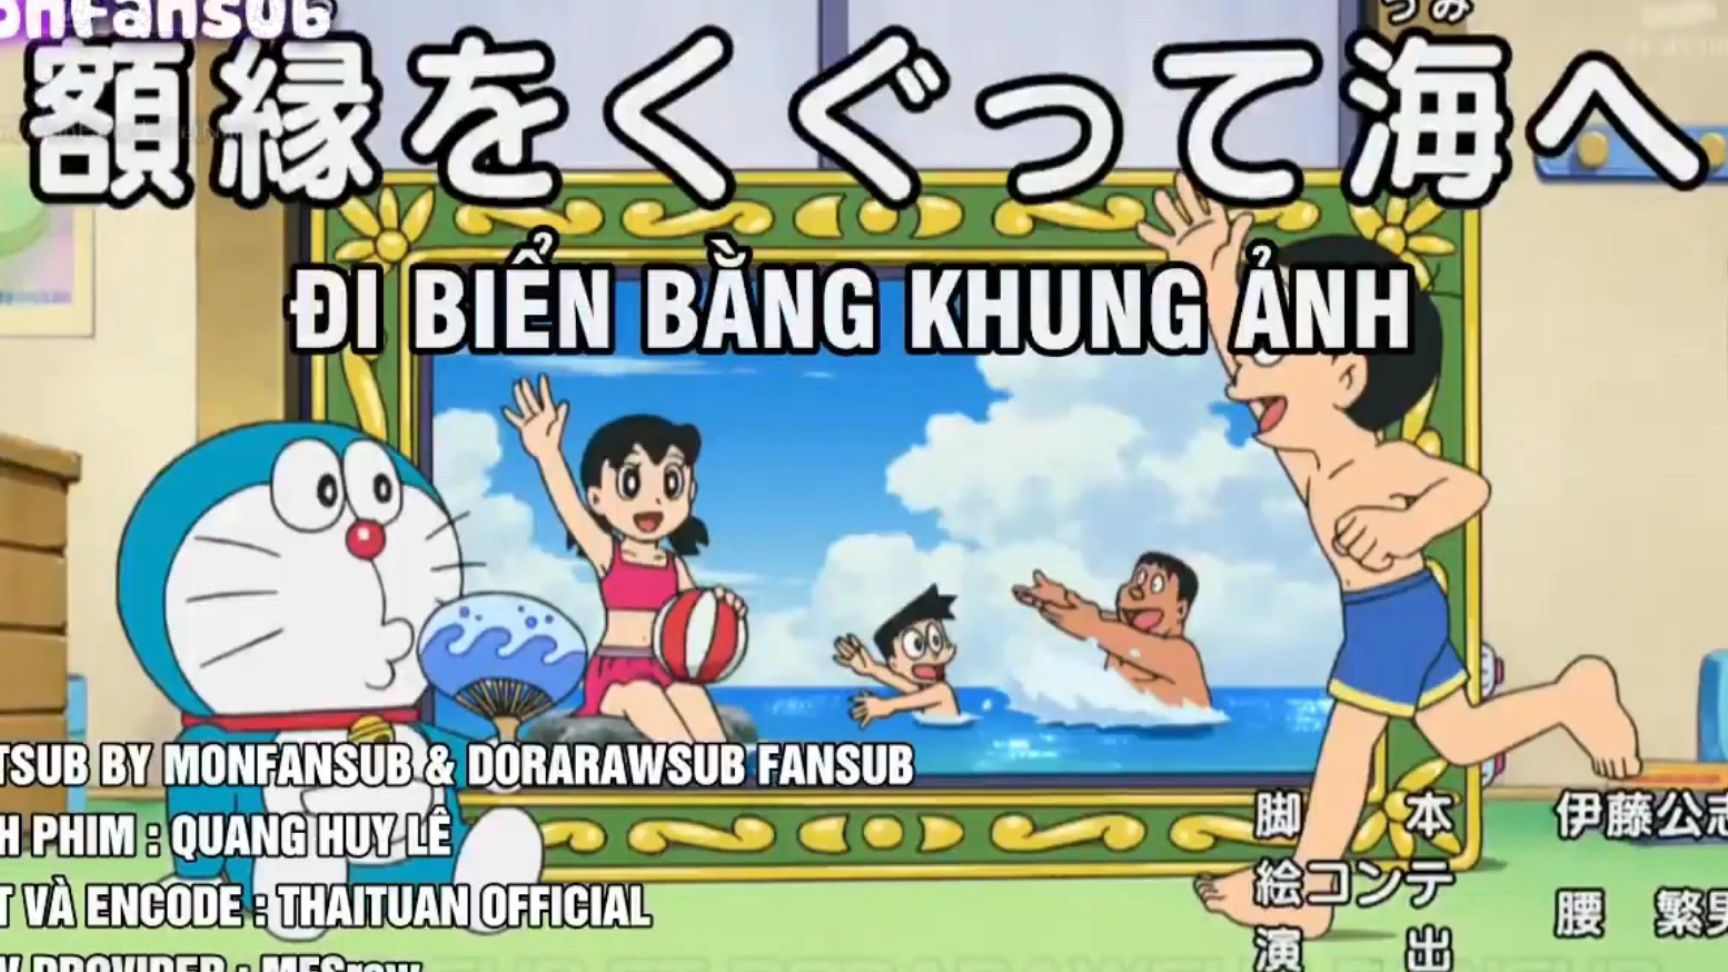 Doraemon và Chukenpa sẽ đưa bạn vào những cuộc phiêu lưu kỳ thú trên tàu du lịch! Liệu họ có tìm được giải pháp để sửa chữa chiếc tàu khi nó gặp sự cố? Hãy xem ngay bộ phim hoạt hình \